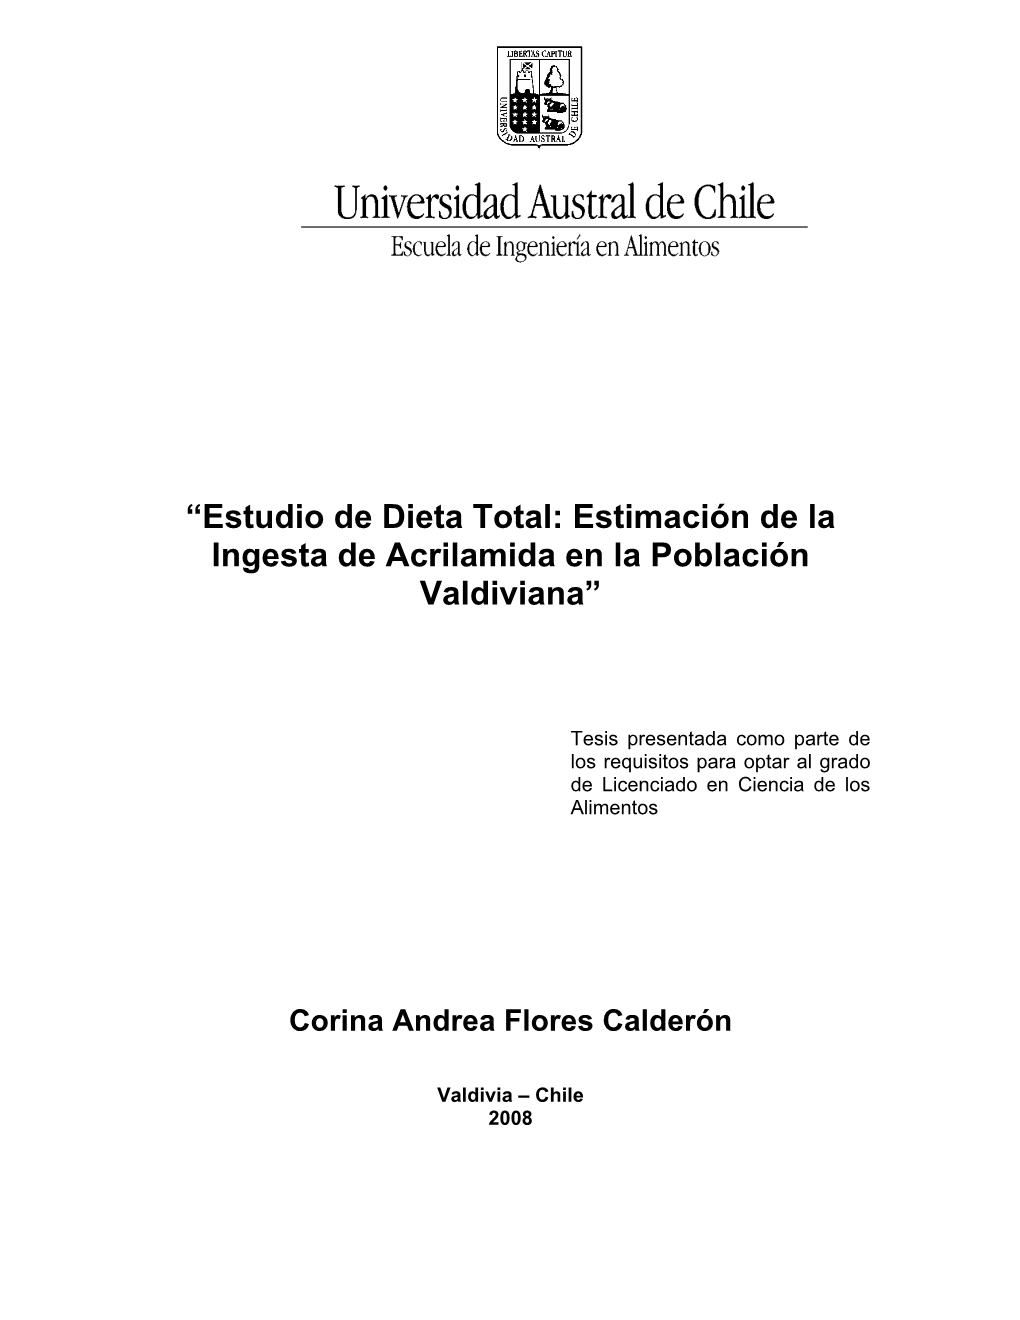 “Estudio De Dieta Total: Estimación De La Ingesta De Acrilamida En La Población Valdiviana”